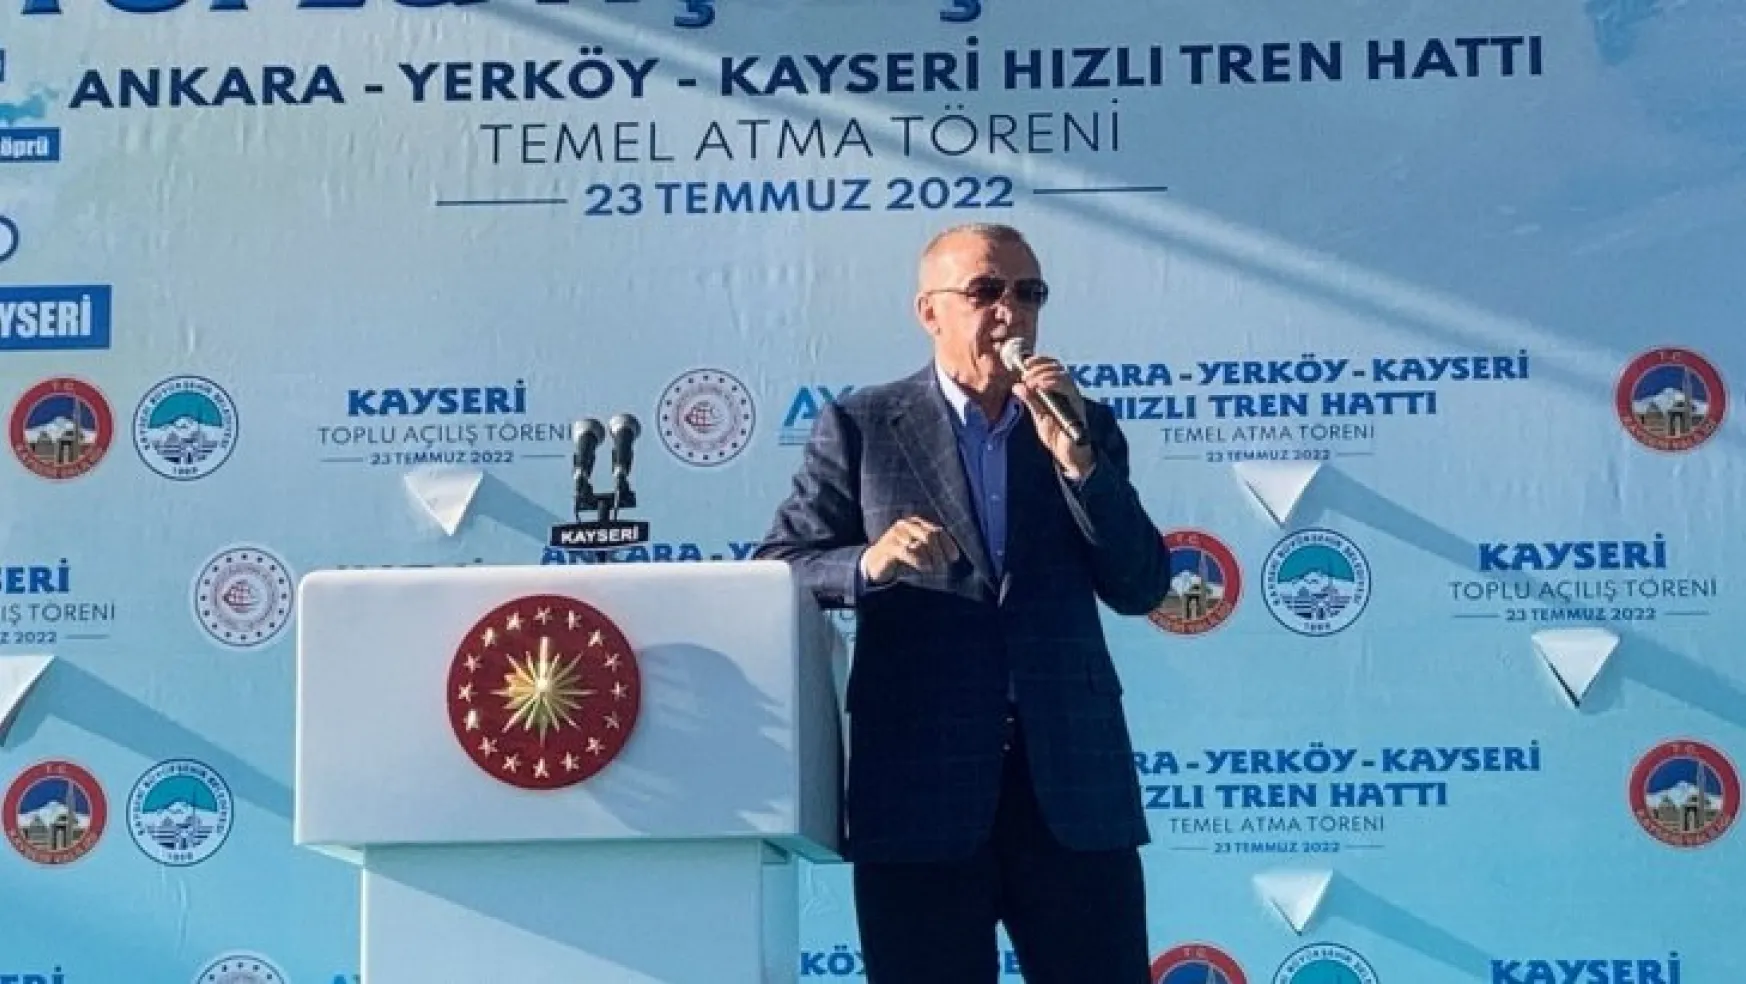 Cumhurbaşkanı Erdoğan Kayseri halkına seslendi